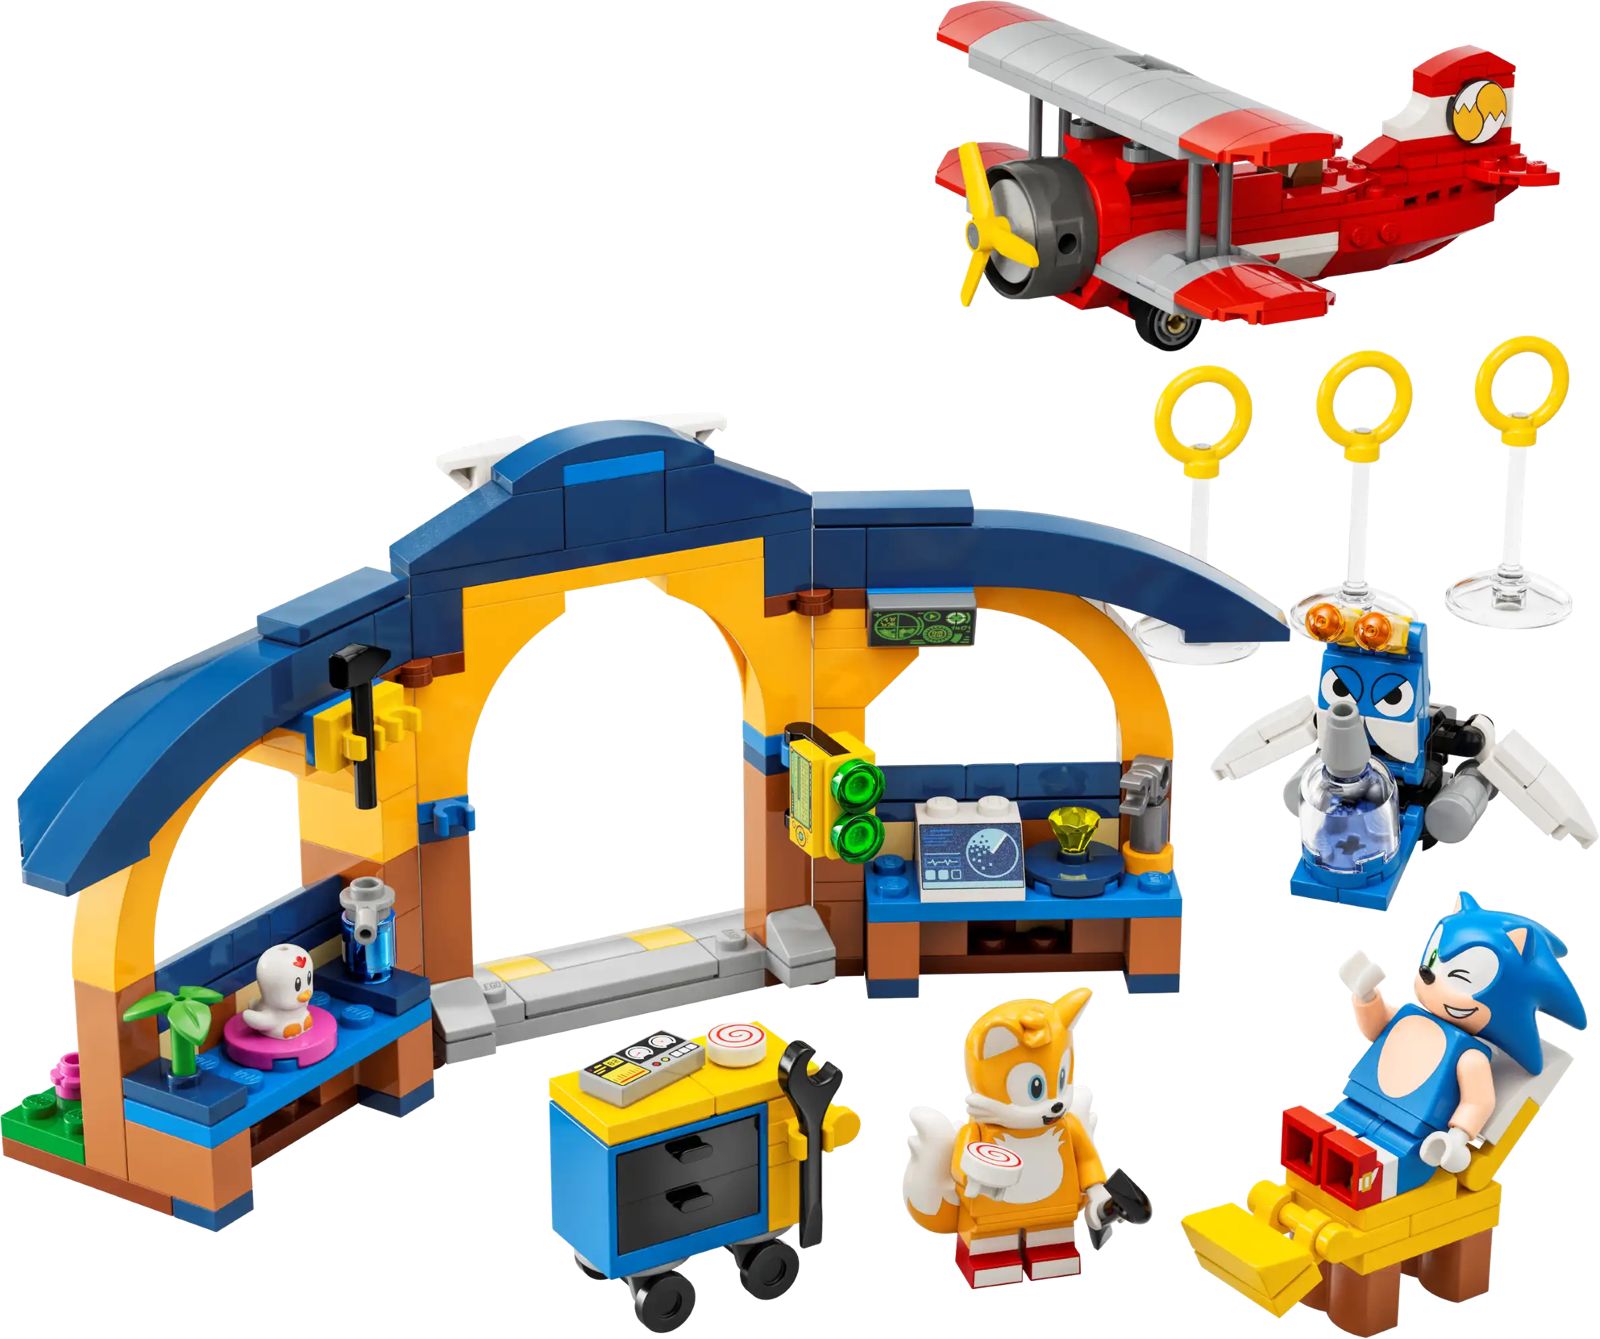 Lego Sonic Taller Y Avión Tornado De Tails 76991